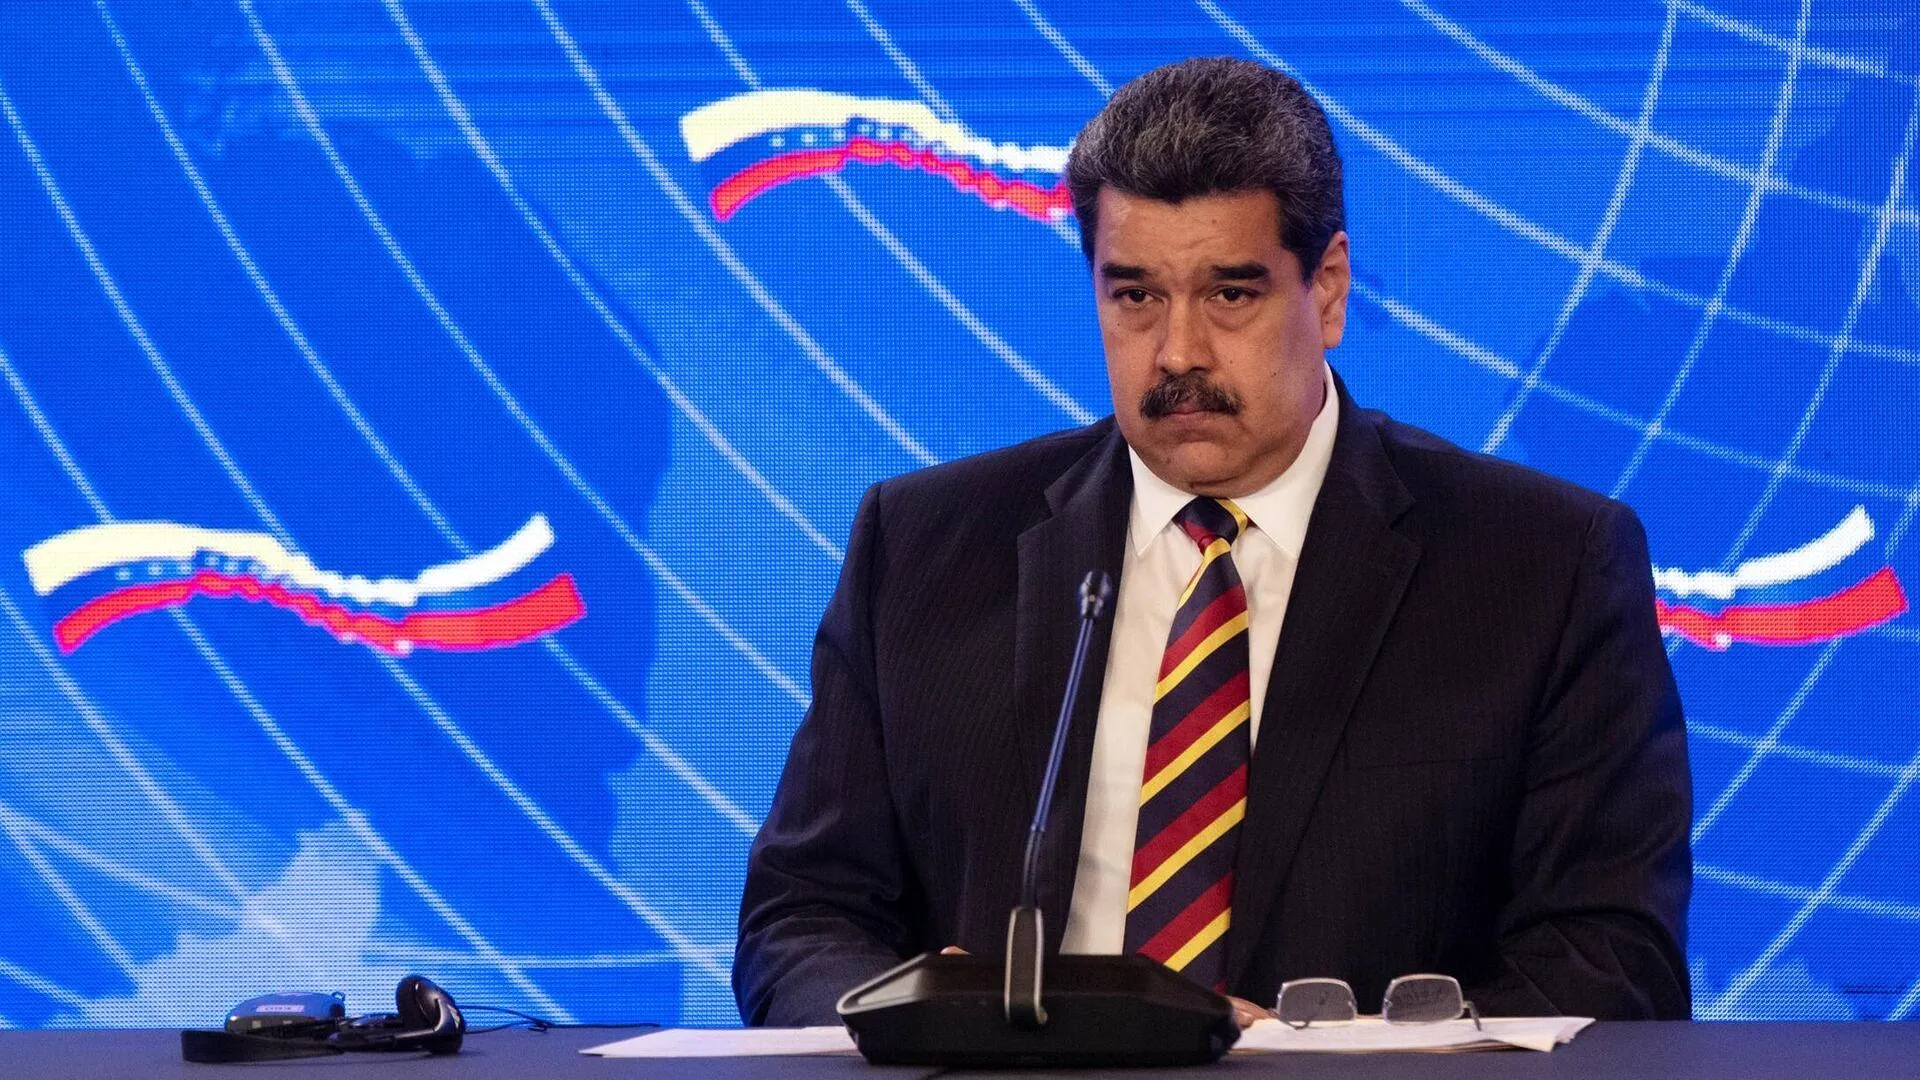 Мадуро обвинил Трампа в организации покушения на его жизнь пять лет назад